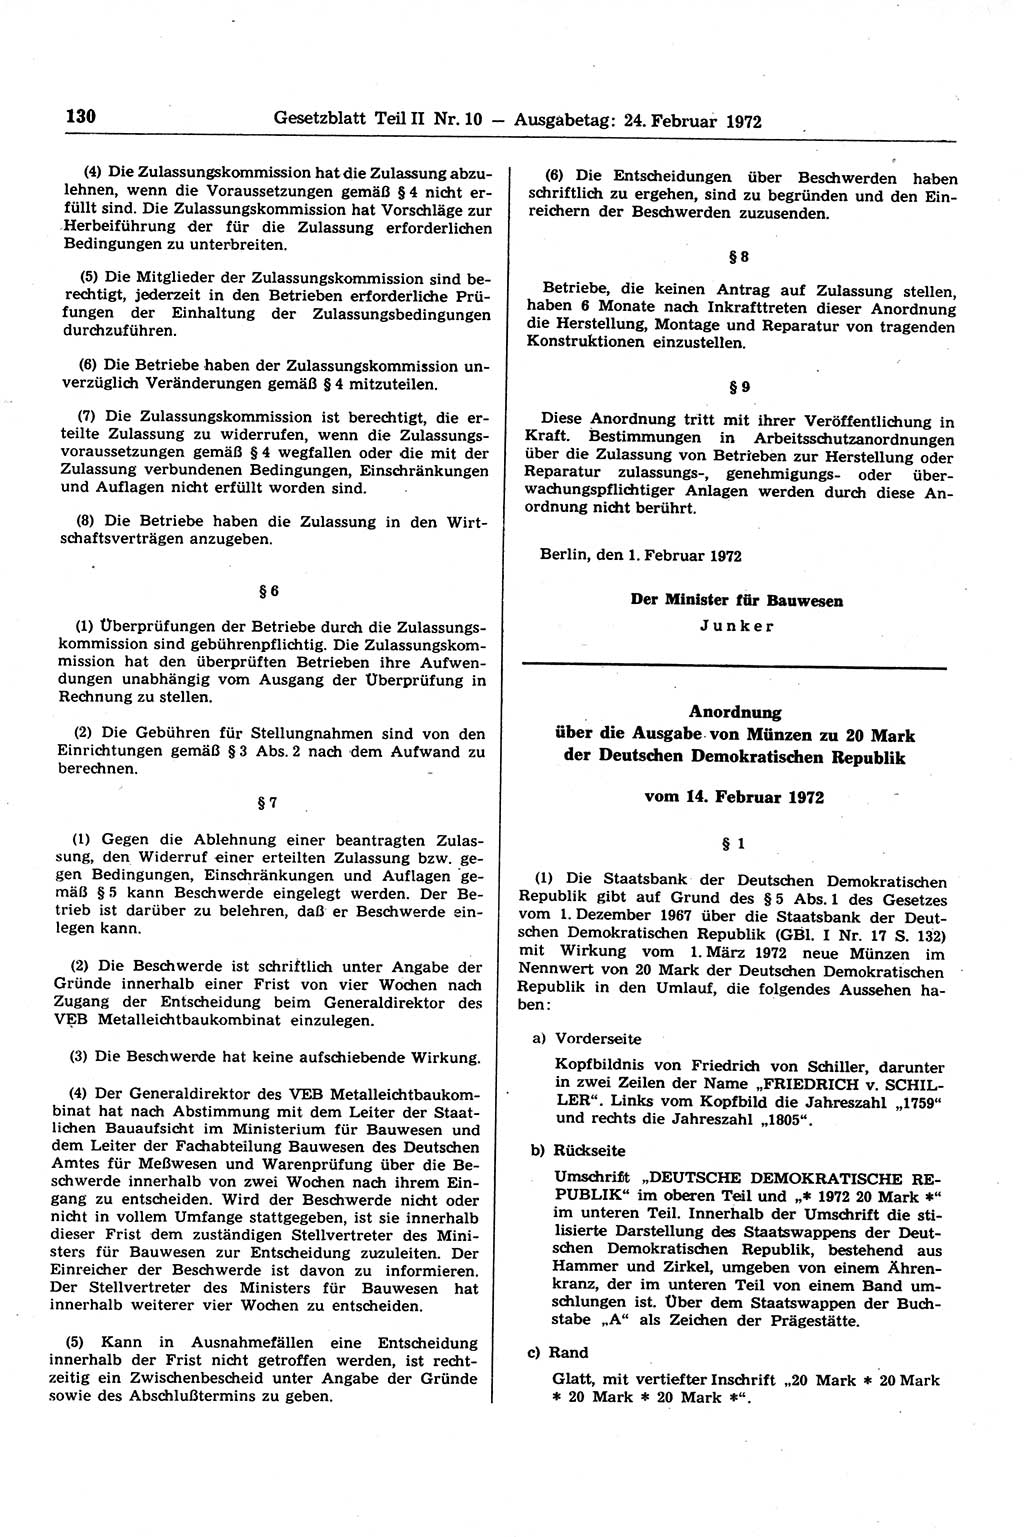 Gesetzblatt (GBl.) der Deutschen Demokratischen Republik (DDR) Teil ⅠⅠ 1972, Seite 130 (GBl. DDR ⅠⅠ 1972, S. 130)